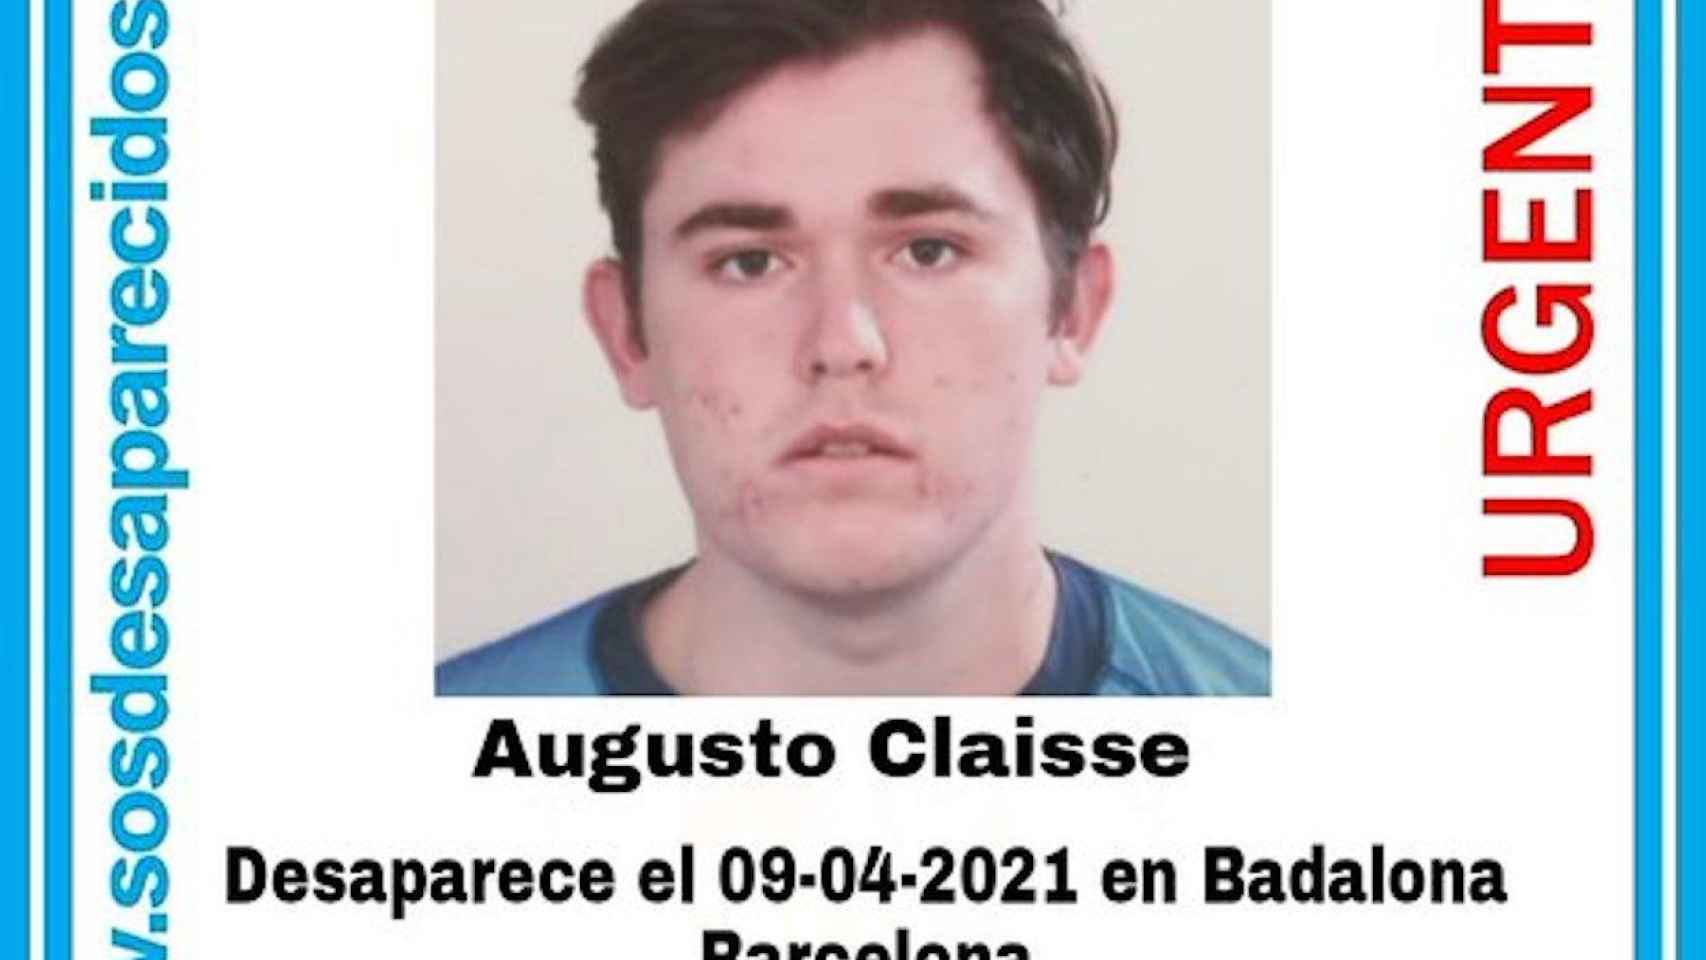 Augusto Claisse, el joven con esquizofrenia desaparecido en Badalona / SOS DESAPARECIDOS